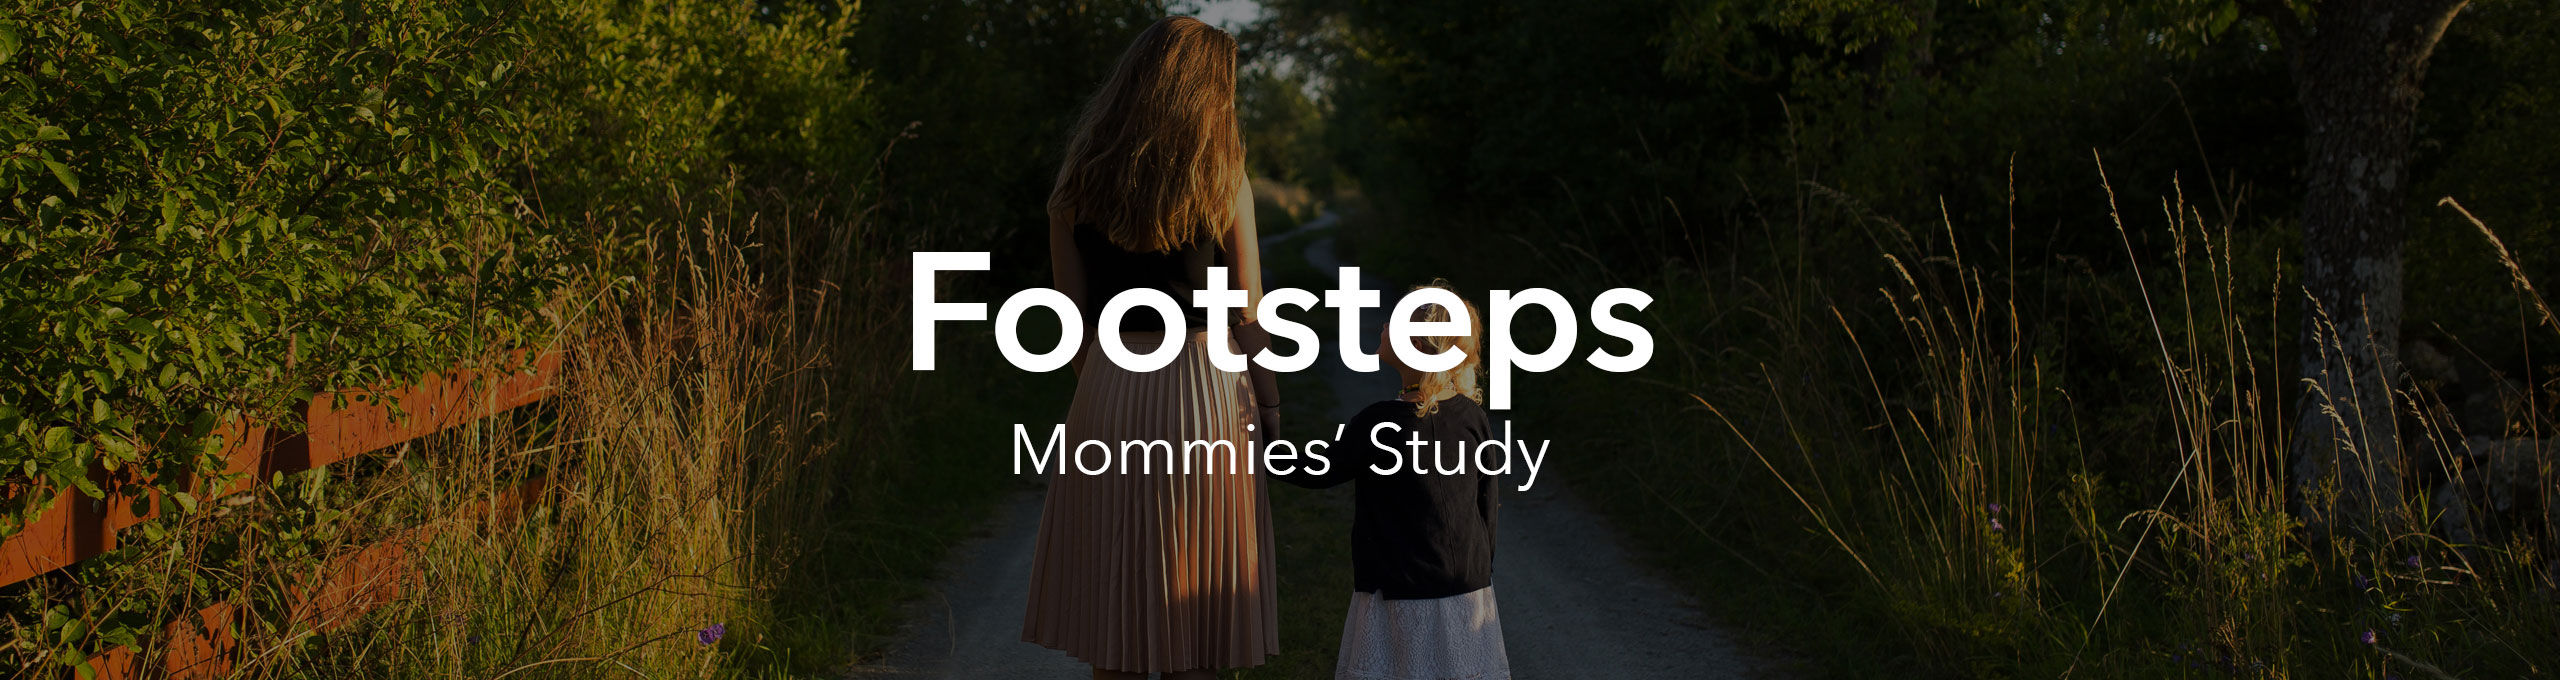 Footsteps Studies